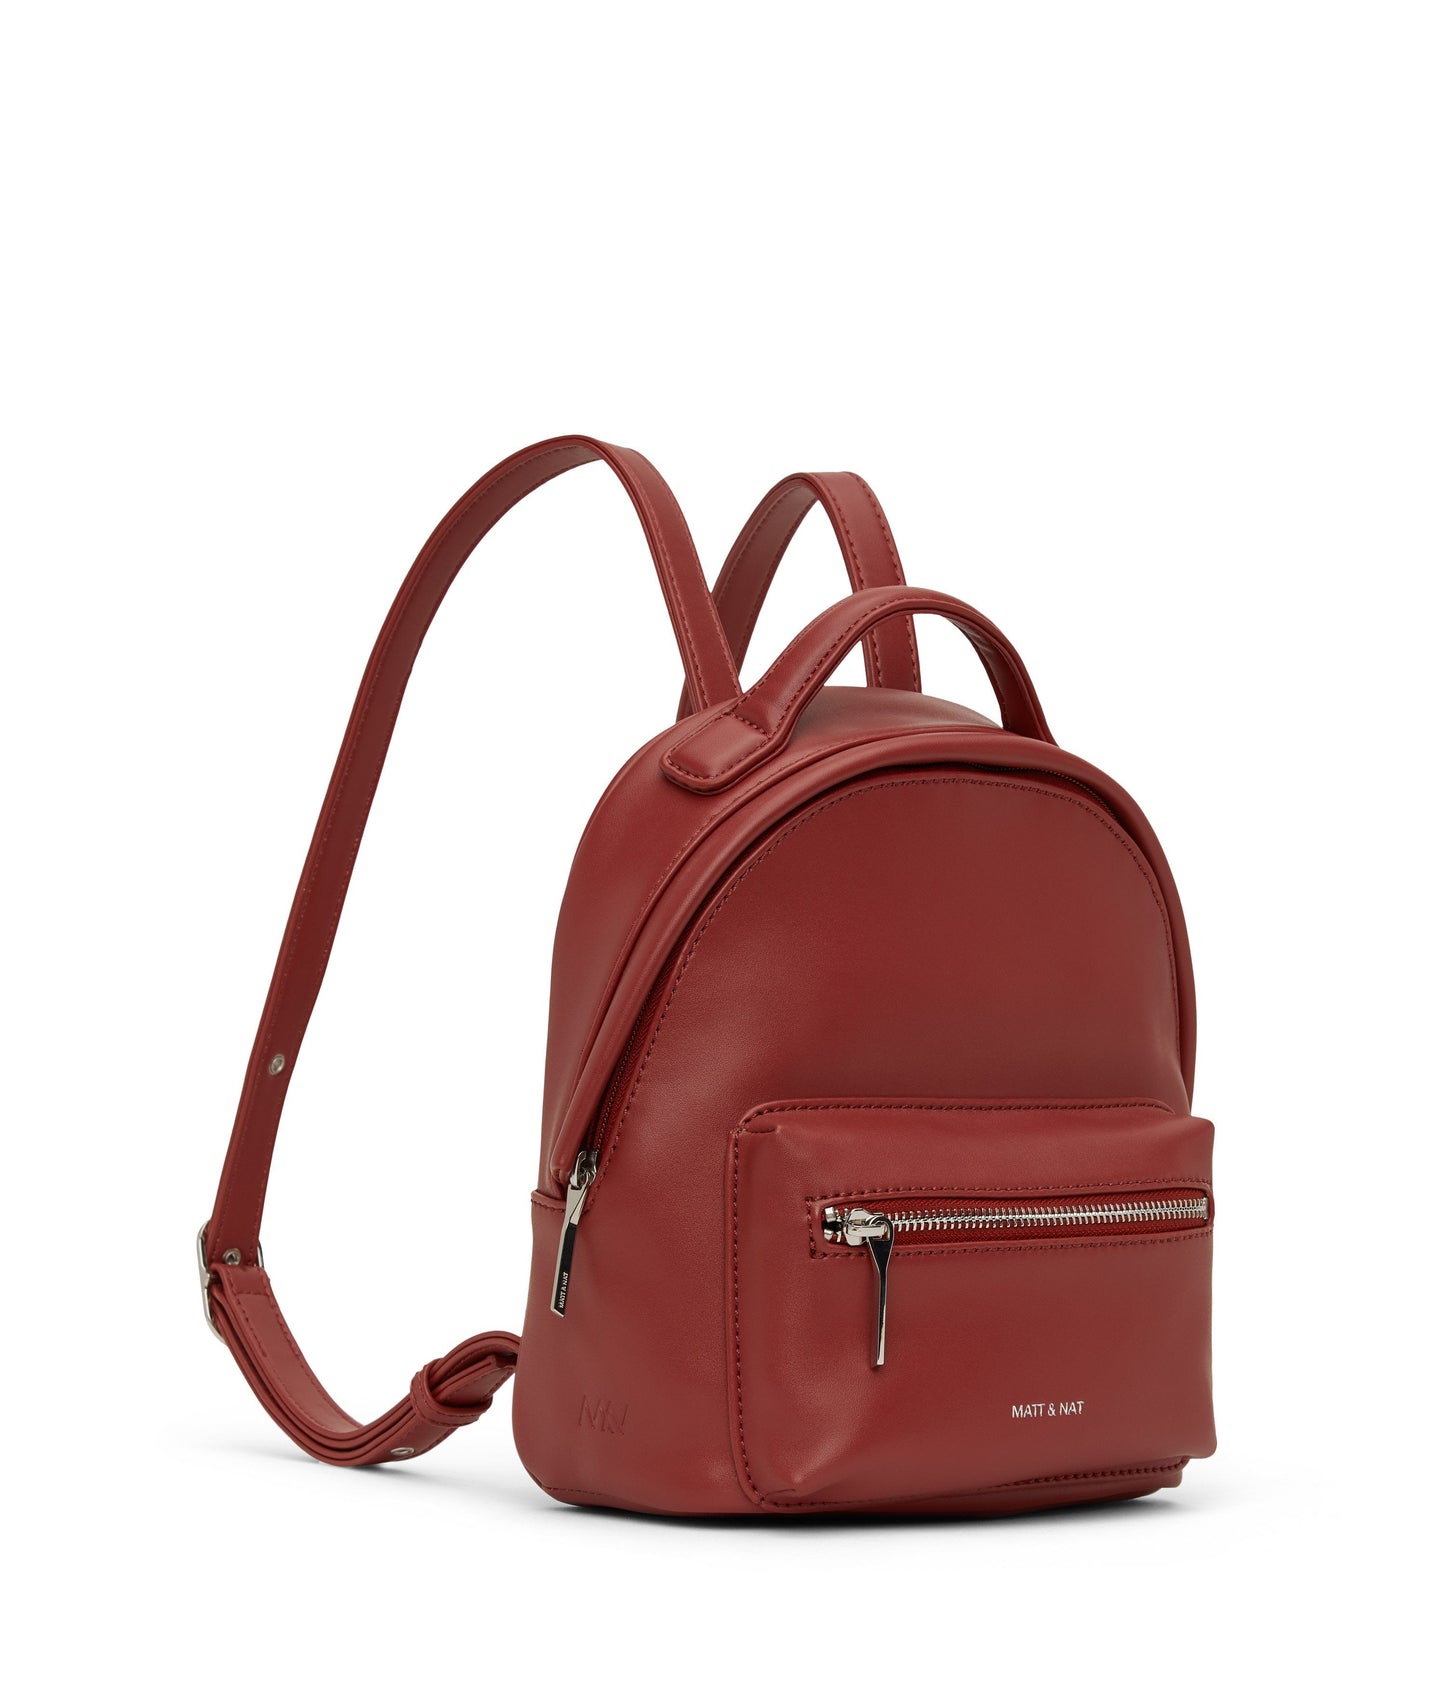 BALIMINI Vegan Mini Backpack - Loom | Color: Red - variant::gala